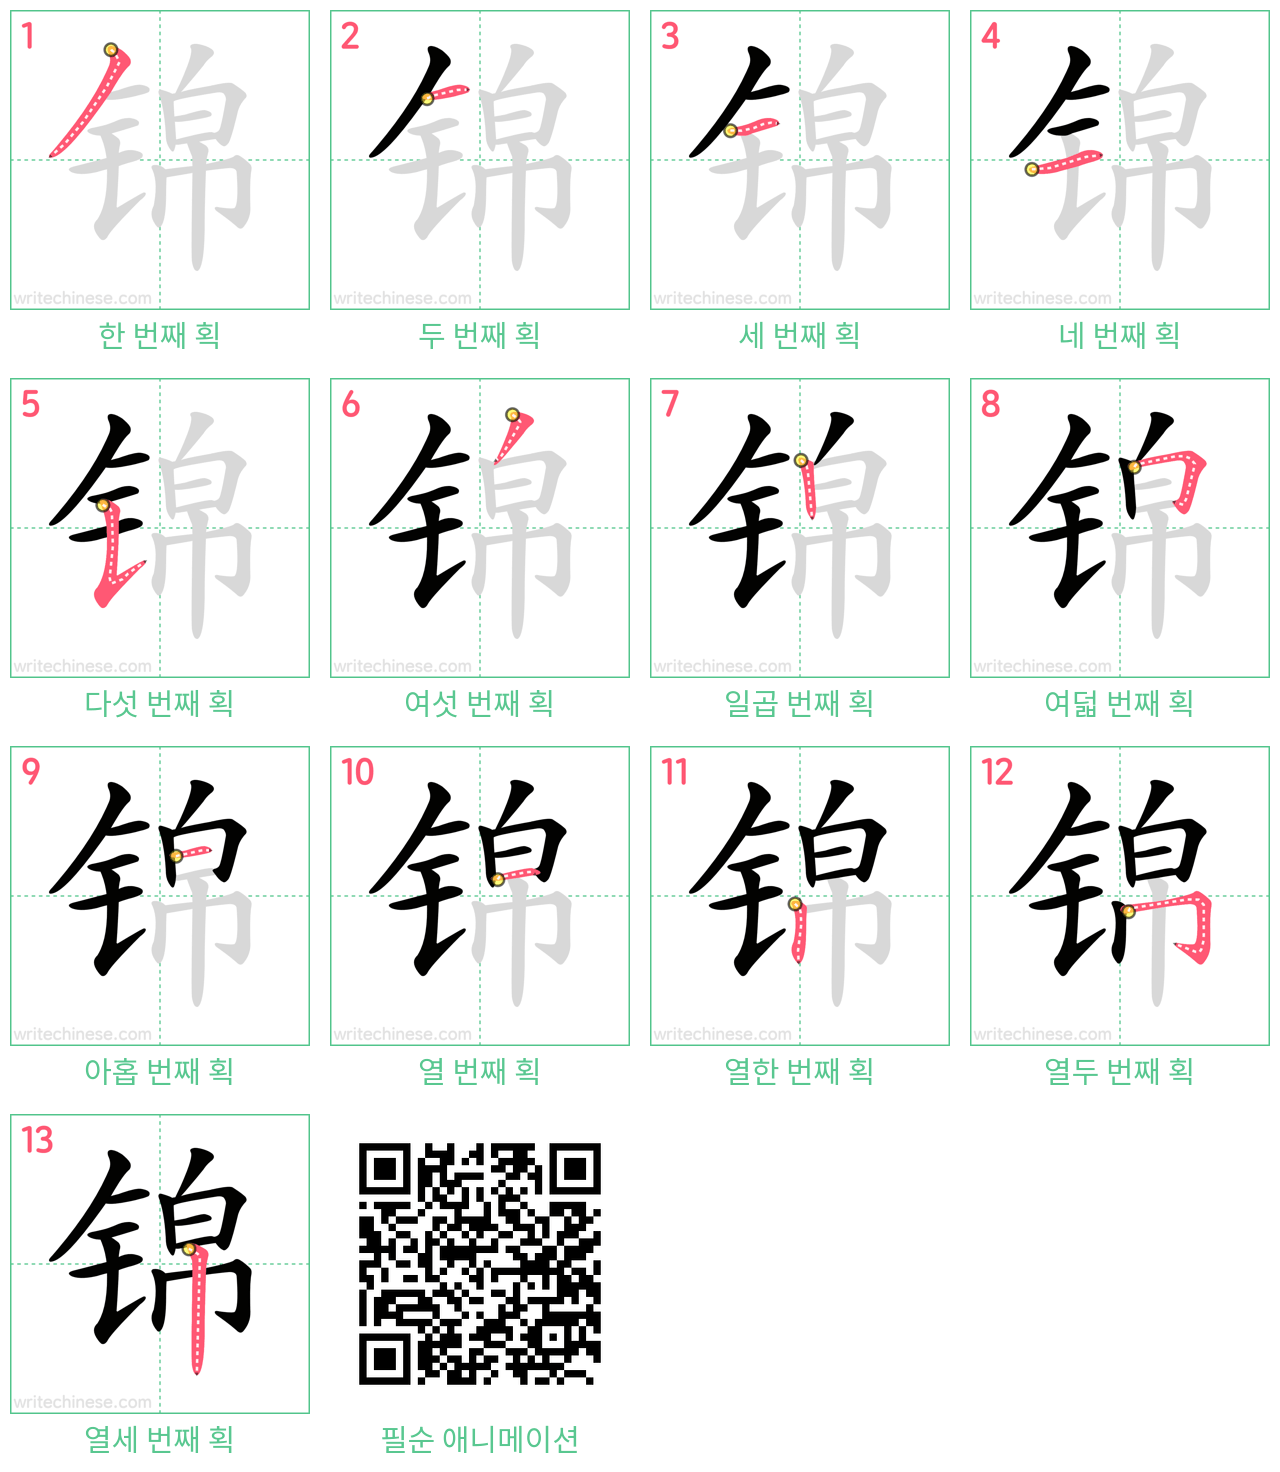 锦 step-by-step stroke order diagrams